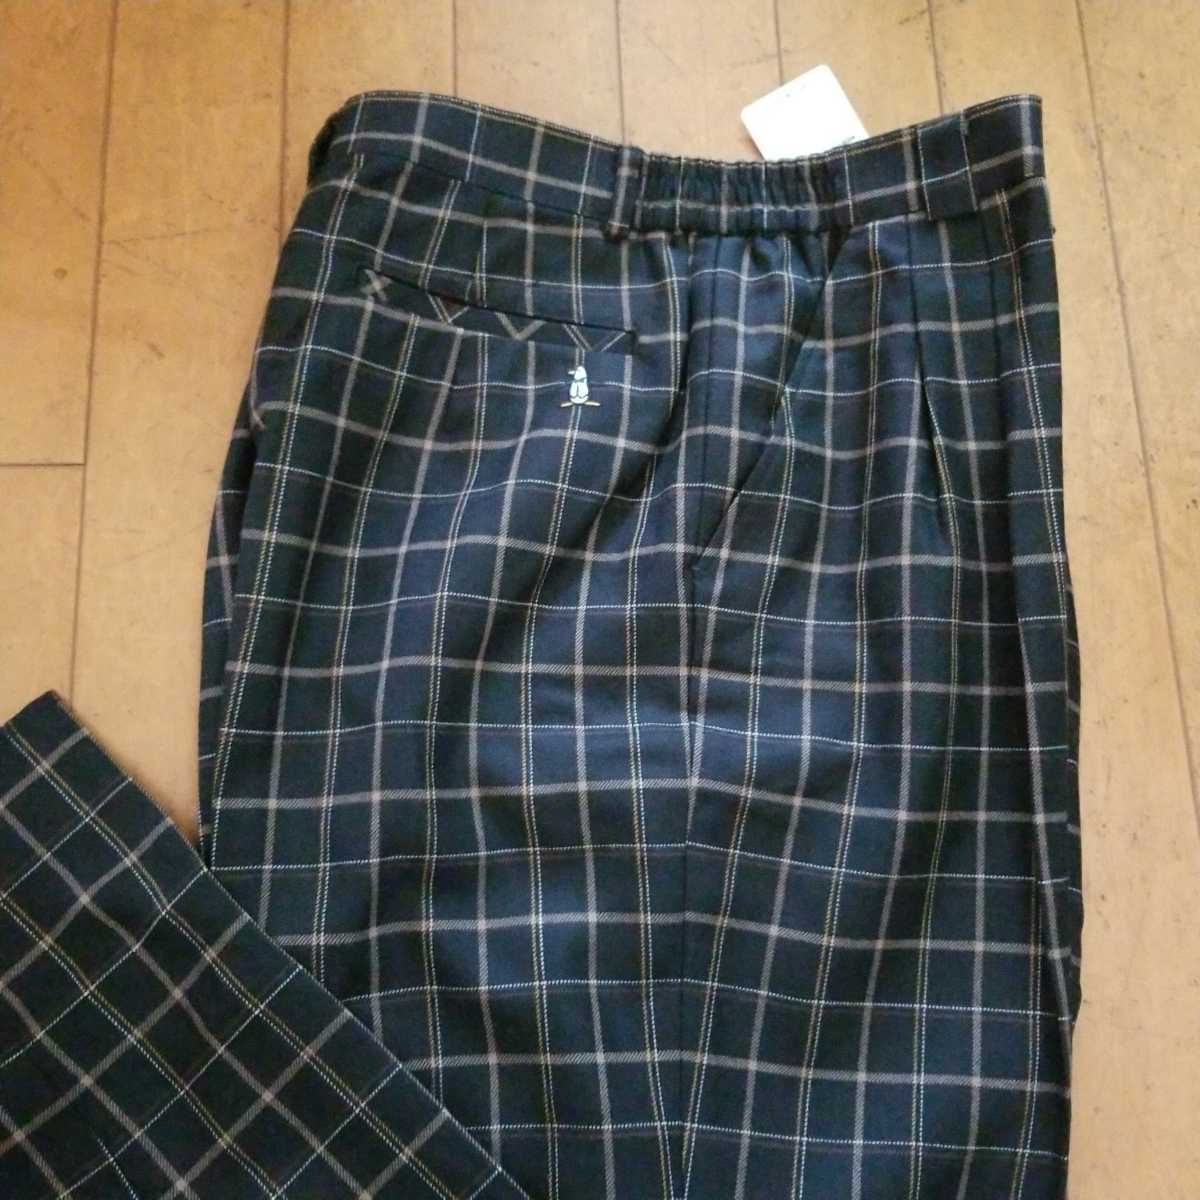  новый товар MUNSINGWEAR Munsingwear одежда / женский водоотталкивающий омыватель bru брюки осень-зима предмет / черный /13 номер W74~78./ обычная цена Y20900(19000+ налог )/ сделано в Японии 